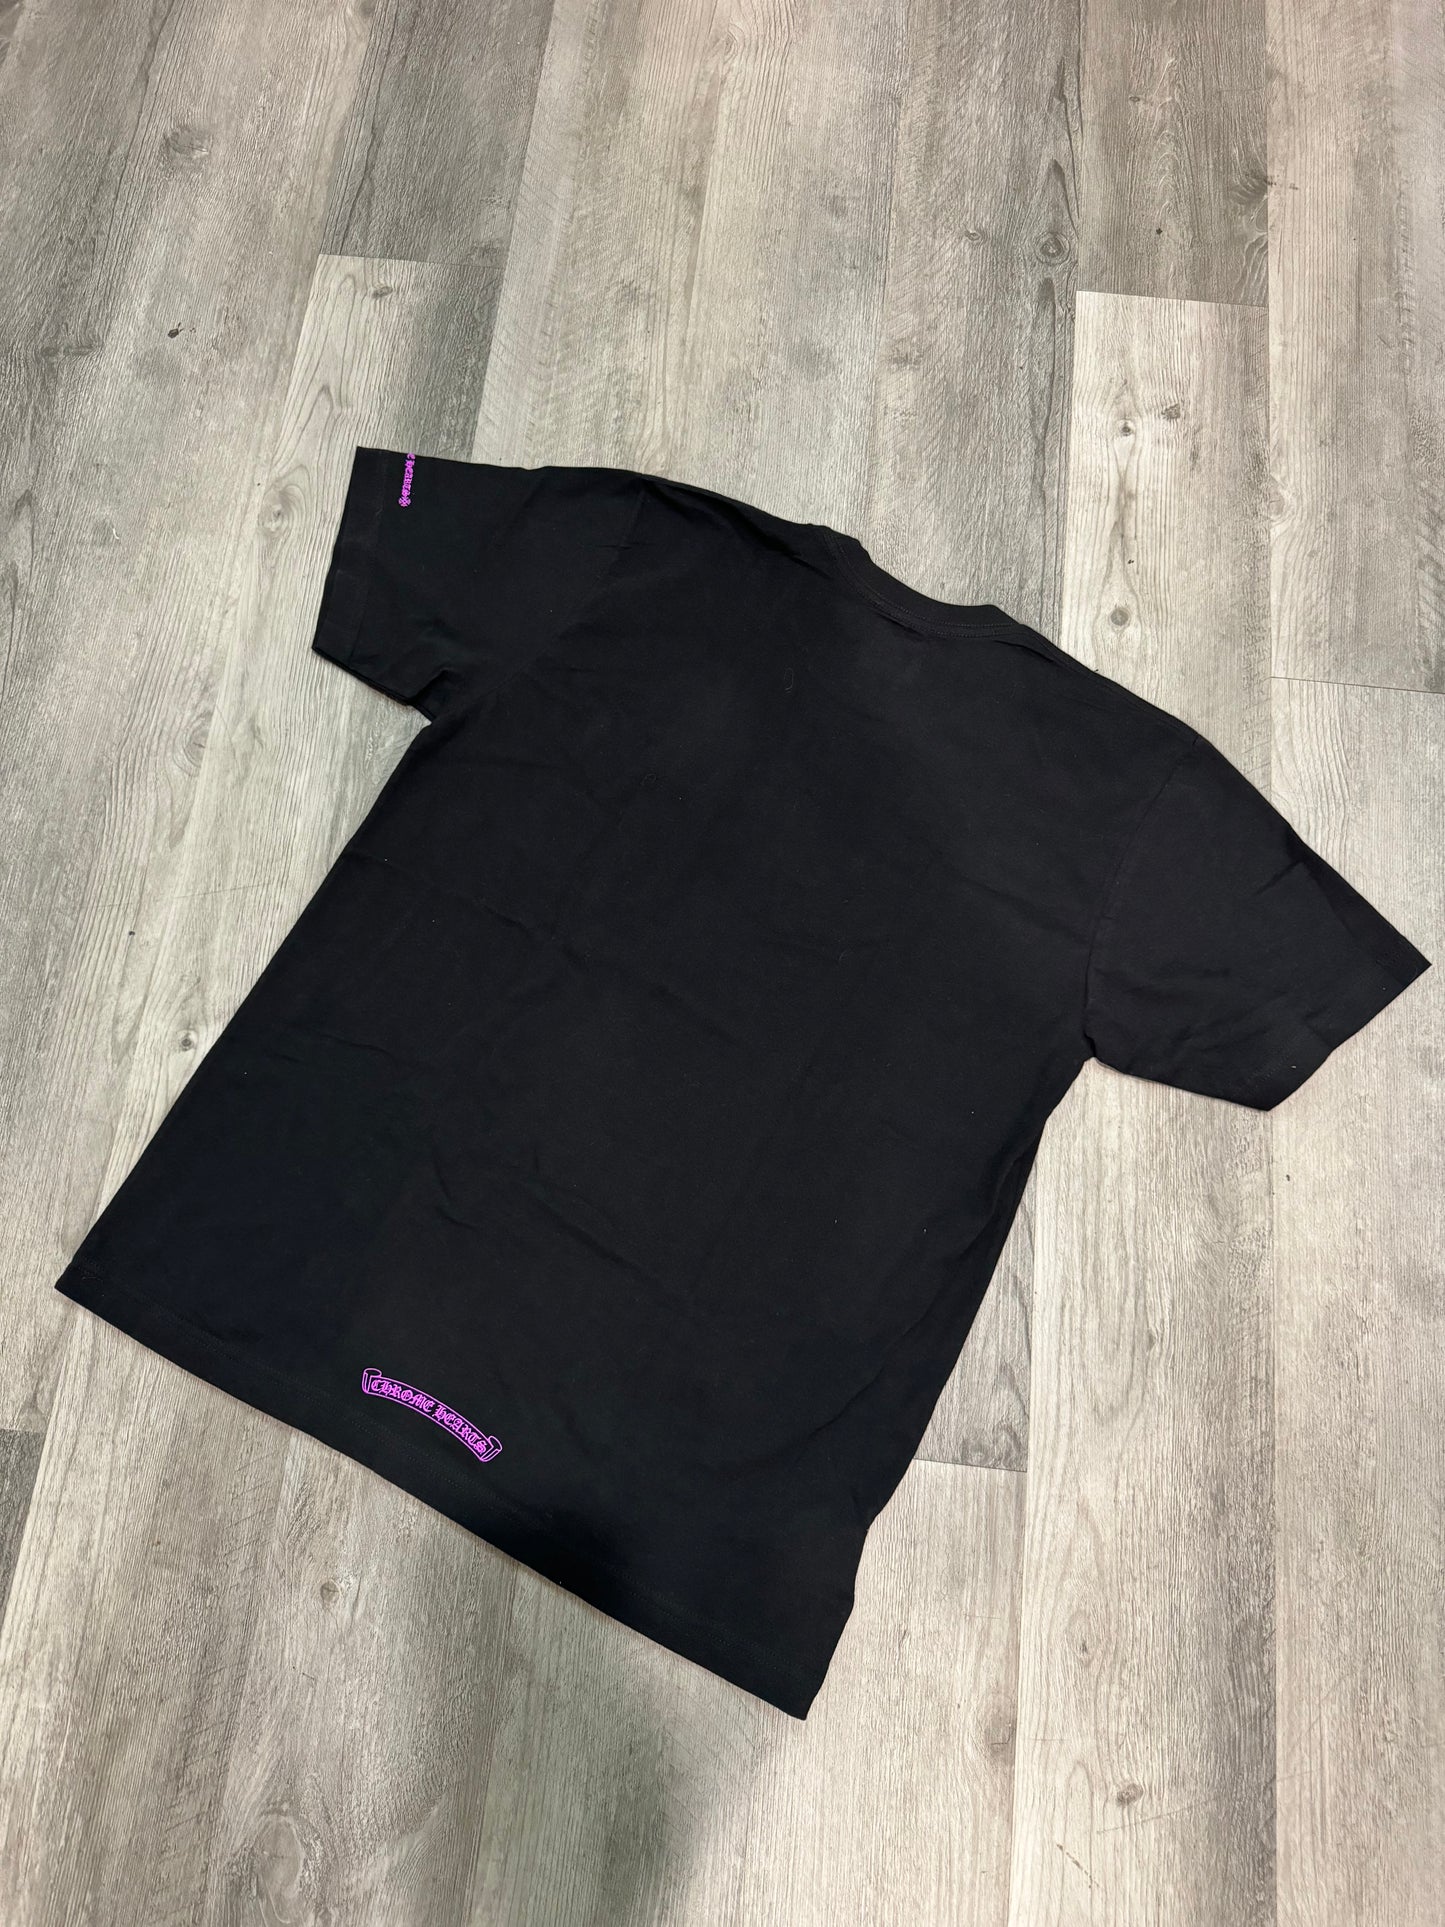 Chrome Hearts Purple Neck Logo T-shirt Black